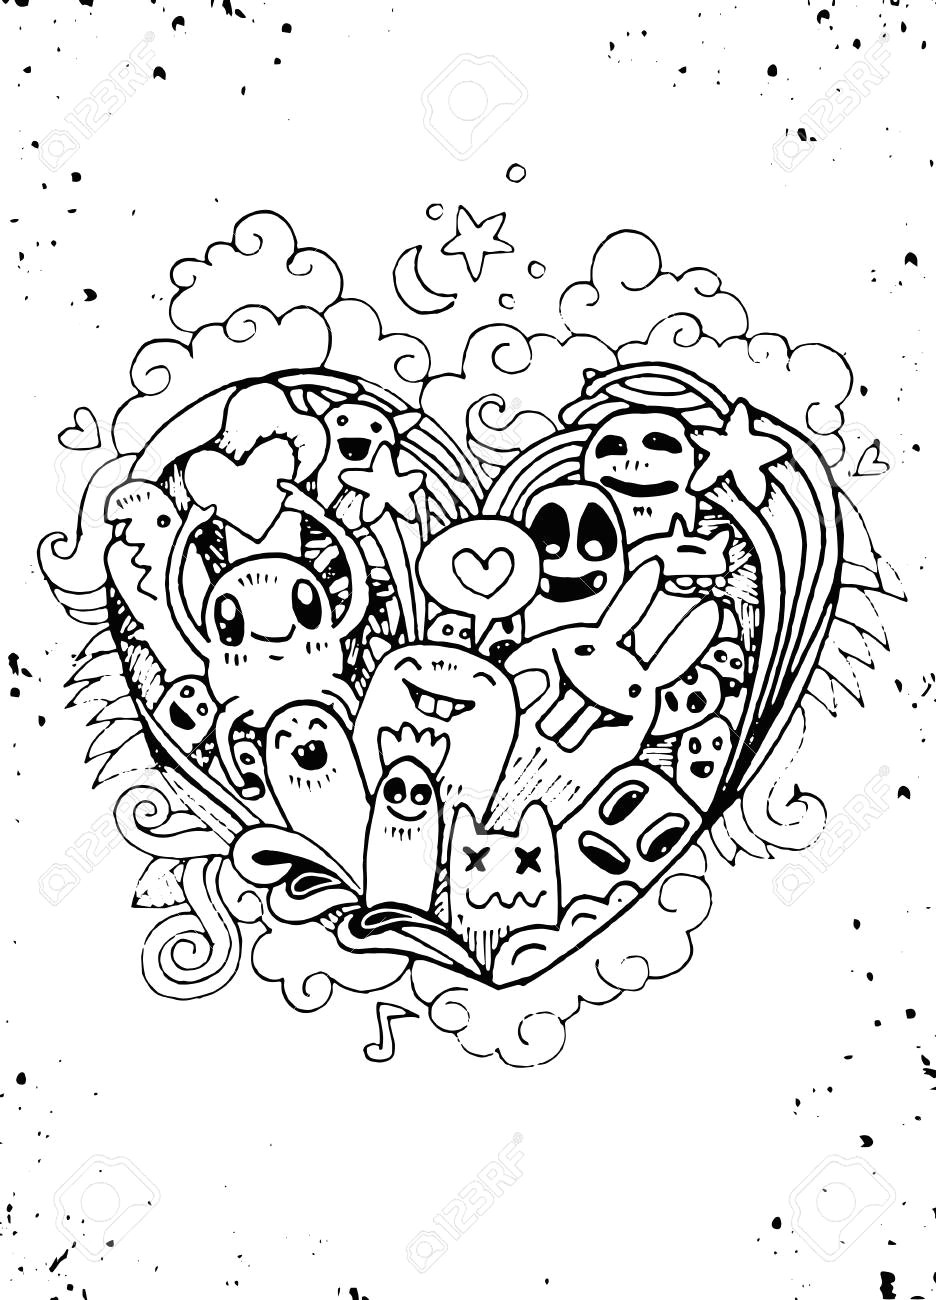 doodle heart shape and doodles monsters sketch vector illustration hipster doodle monster love